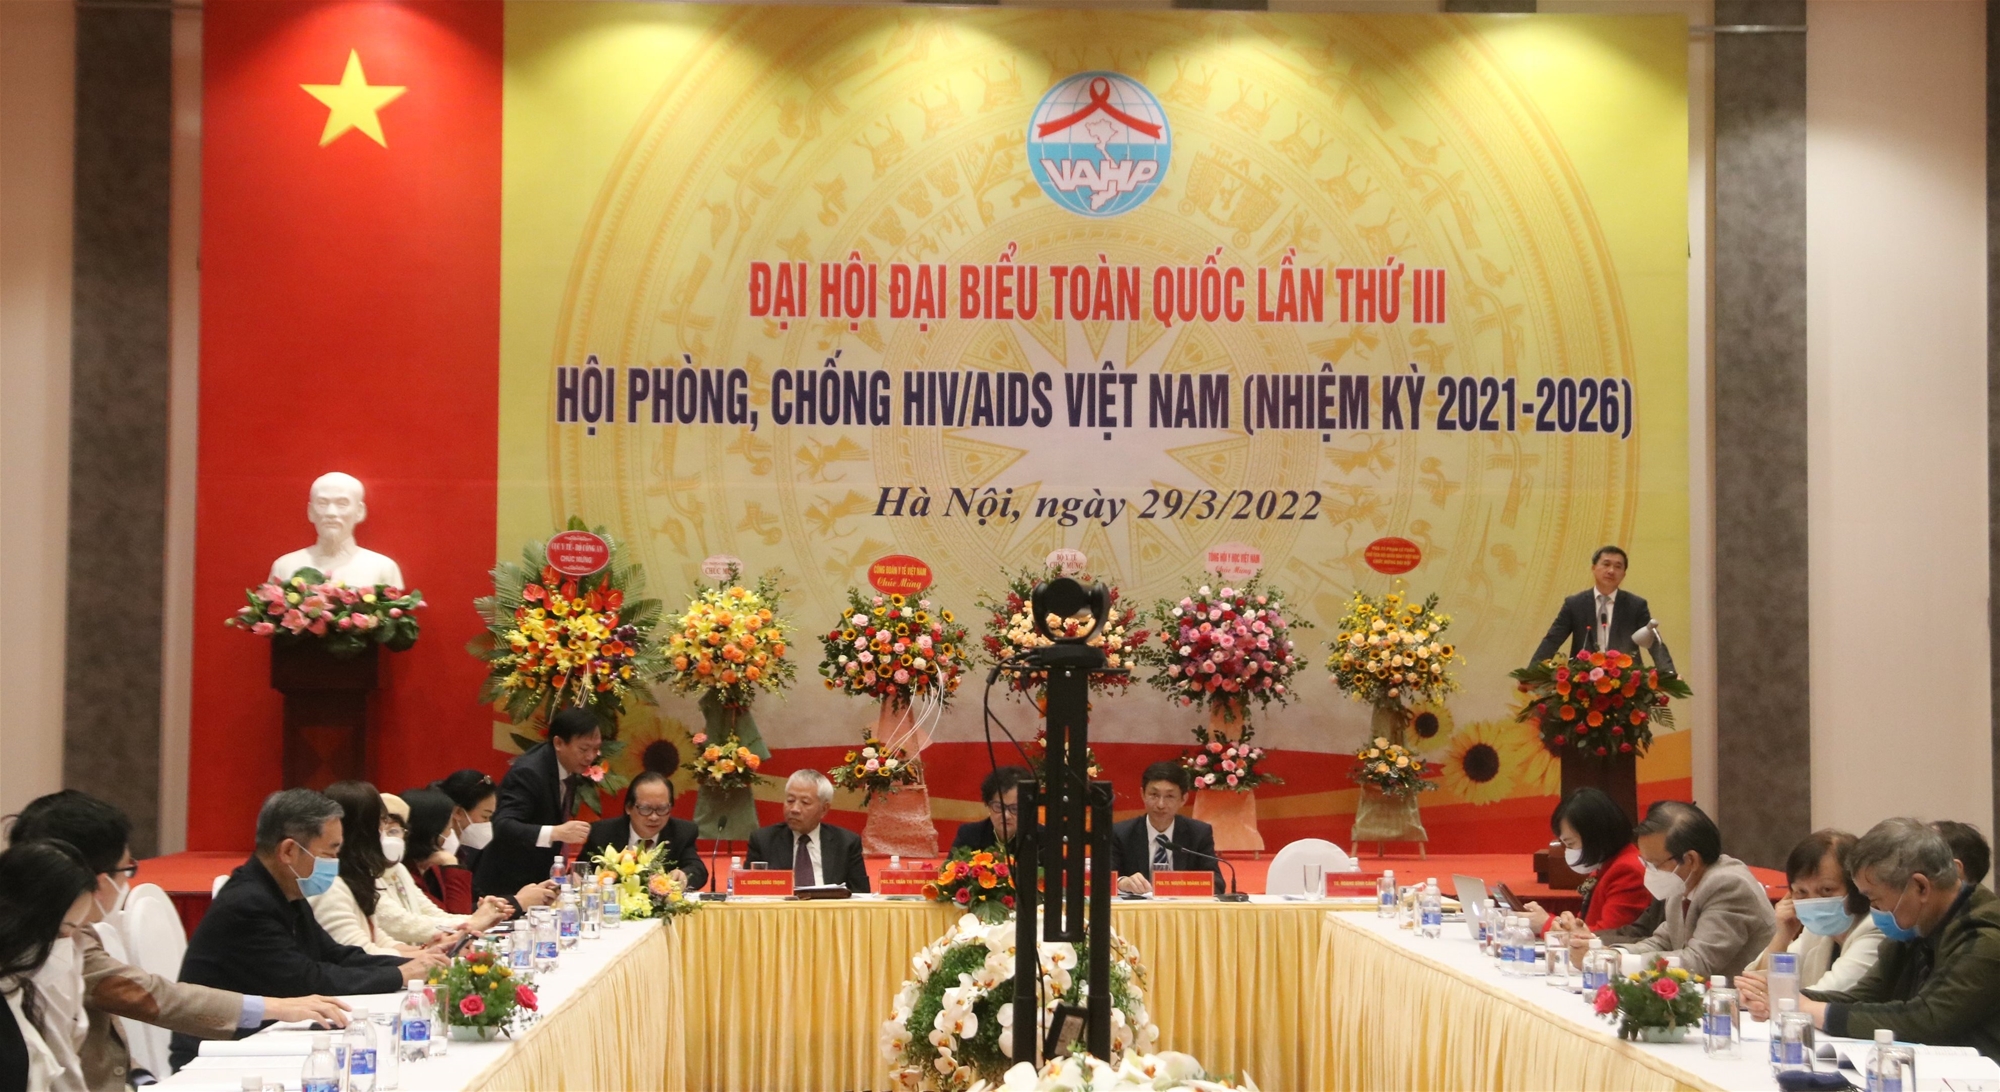 Hội Phòng, chống HIV/AIDS Việt Nam tổ chức Đại hội đại biểu toàn quốc lần thứ III (nhiệm kỳ 2021-2026)